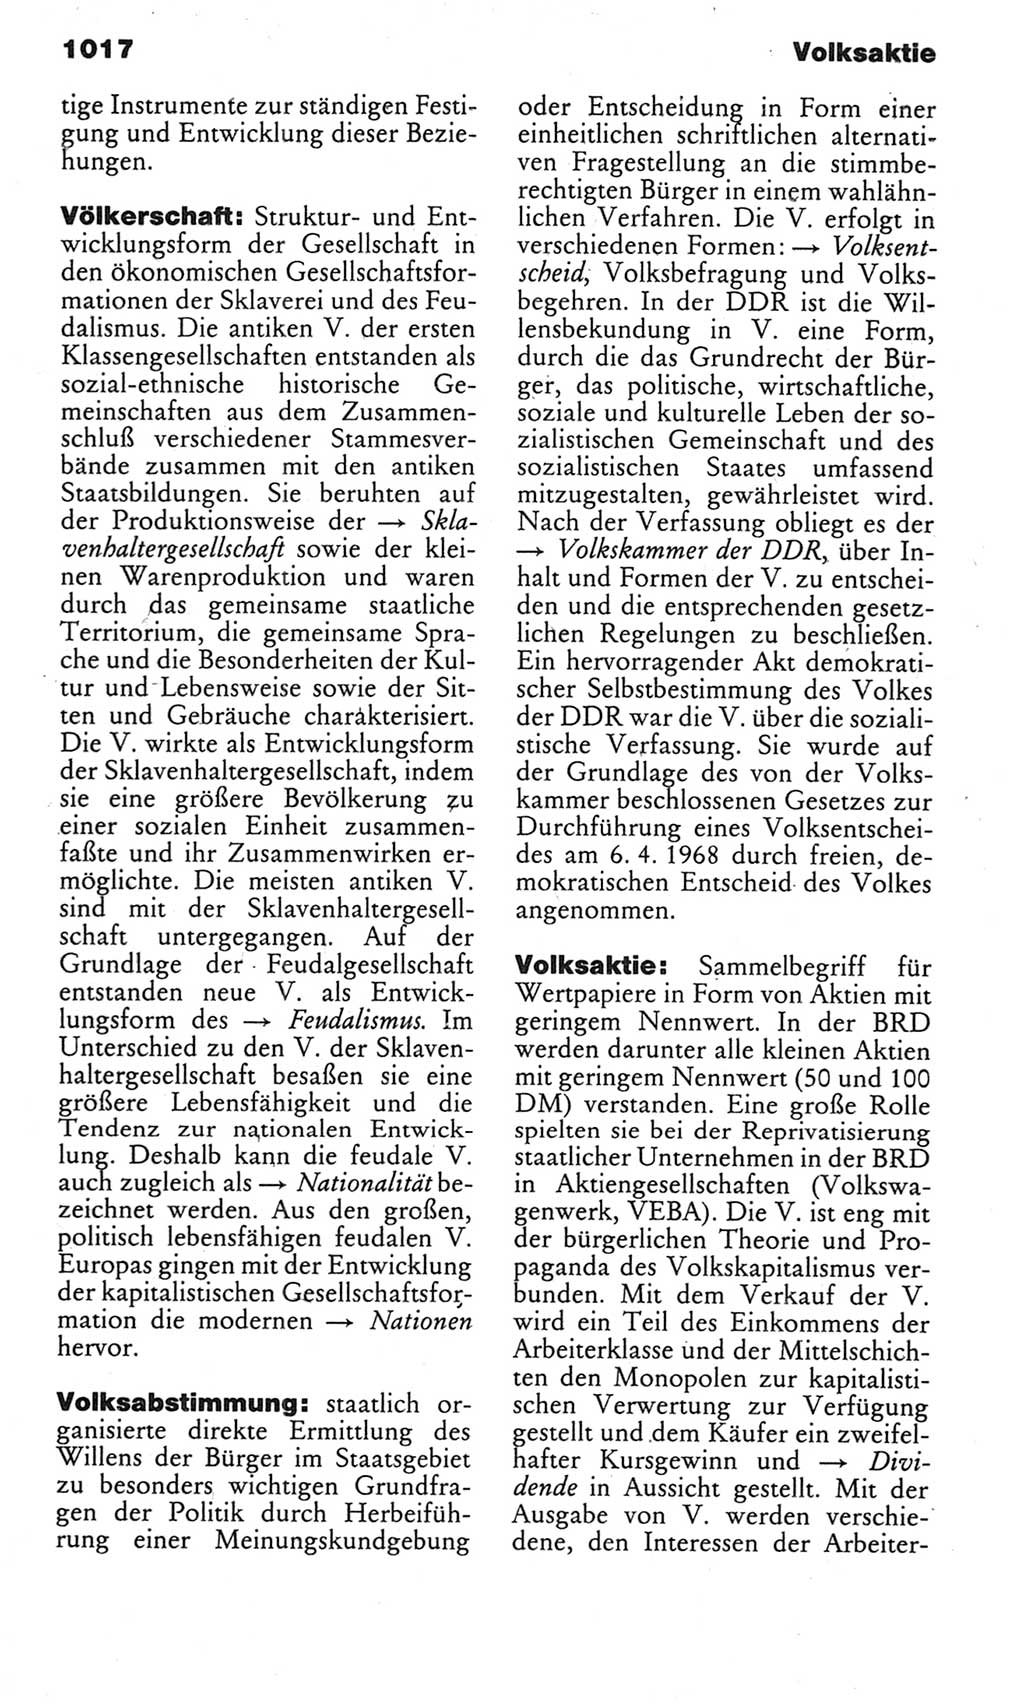 Kleines politisches Wörterbuch [Deutsche Demokratische Republik (DDR)] 1983, Seite 1017 (Kl. pol. Wb. DDR 1983, S. 1017)